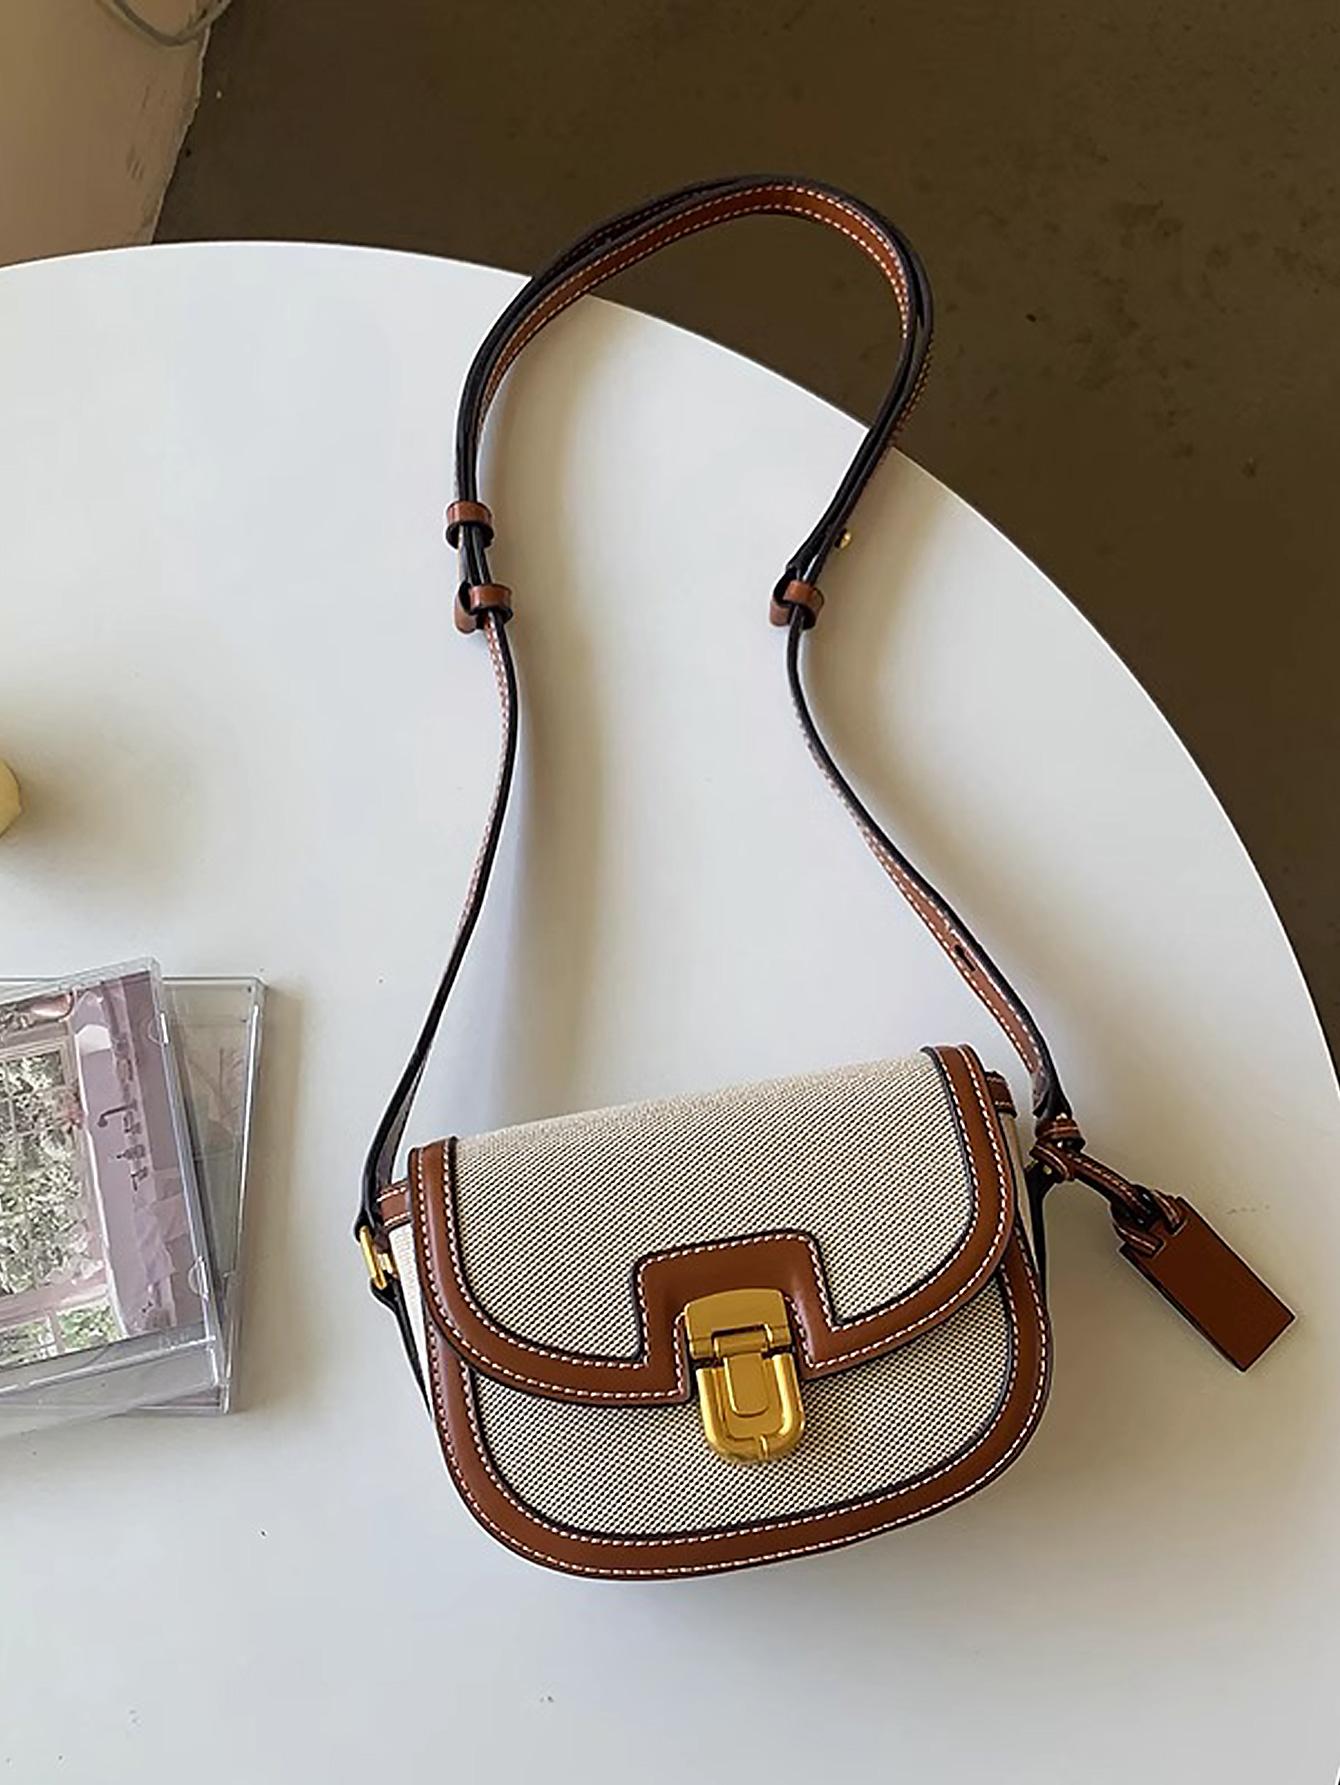 Новая модная седельная сумка с цветными блоками, абрикос новая плетеная женская сумка на одно плечо черная маленькая квадратная сумка 2021 модная ажурная дизайнерская диагональная сумка на одно пл